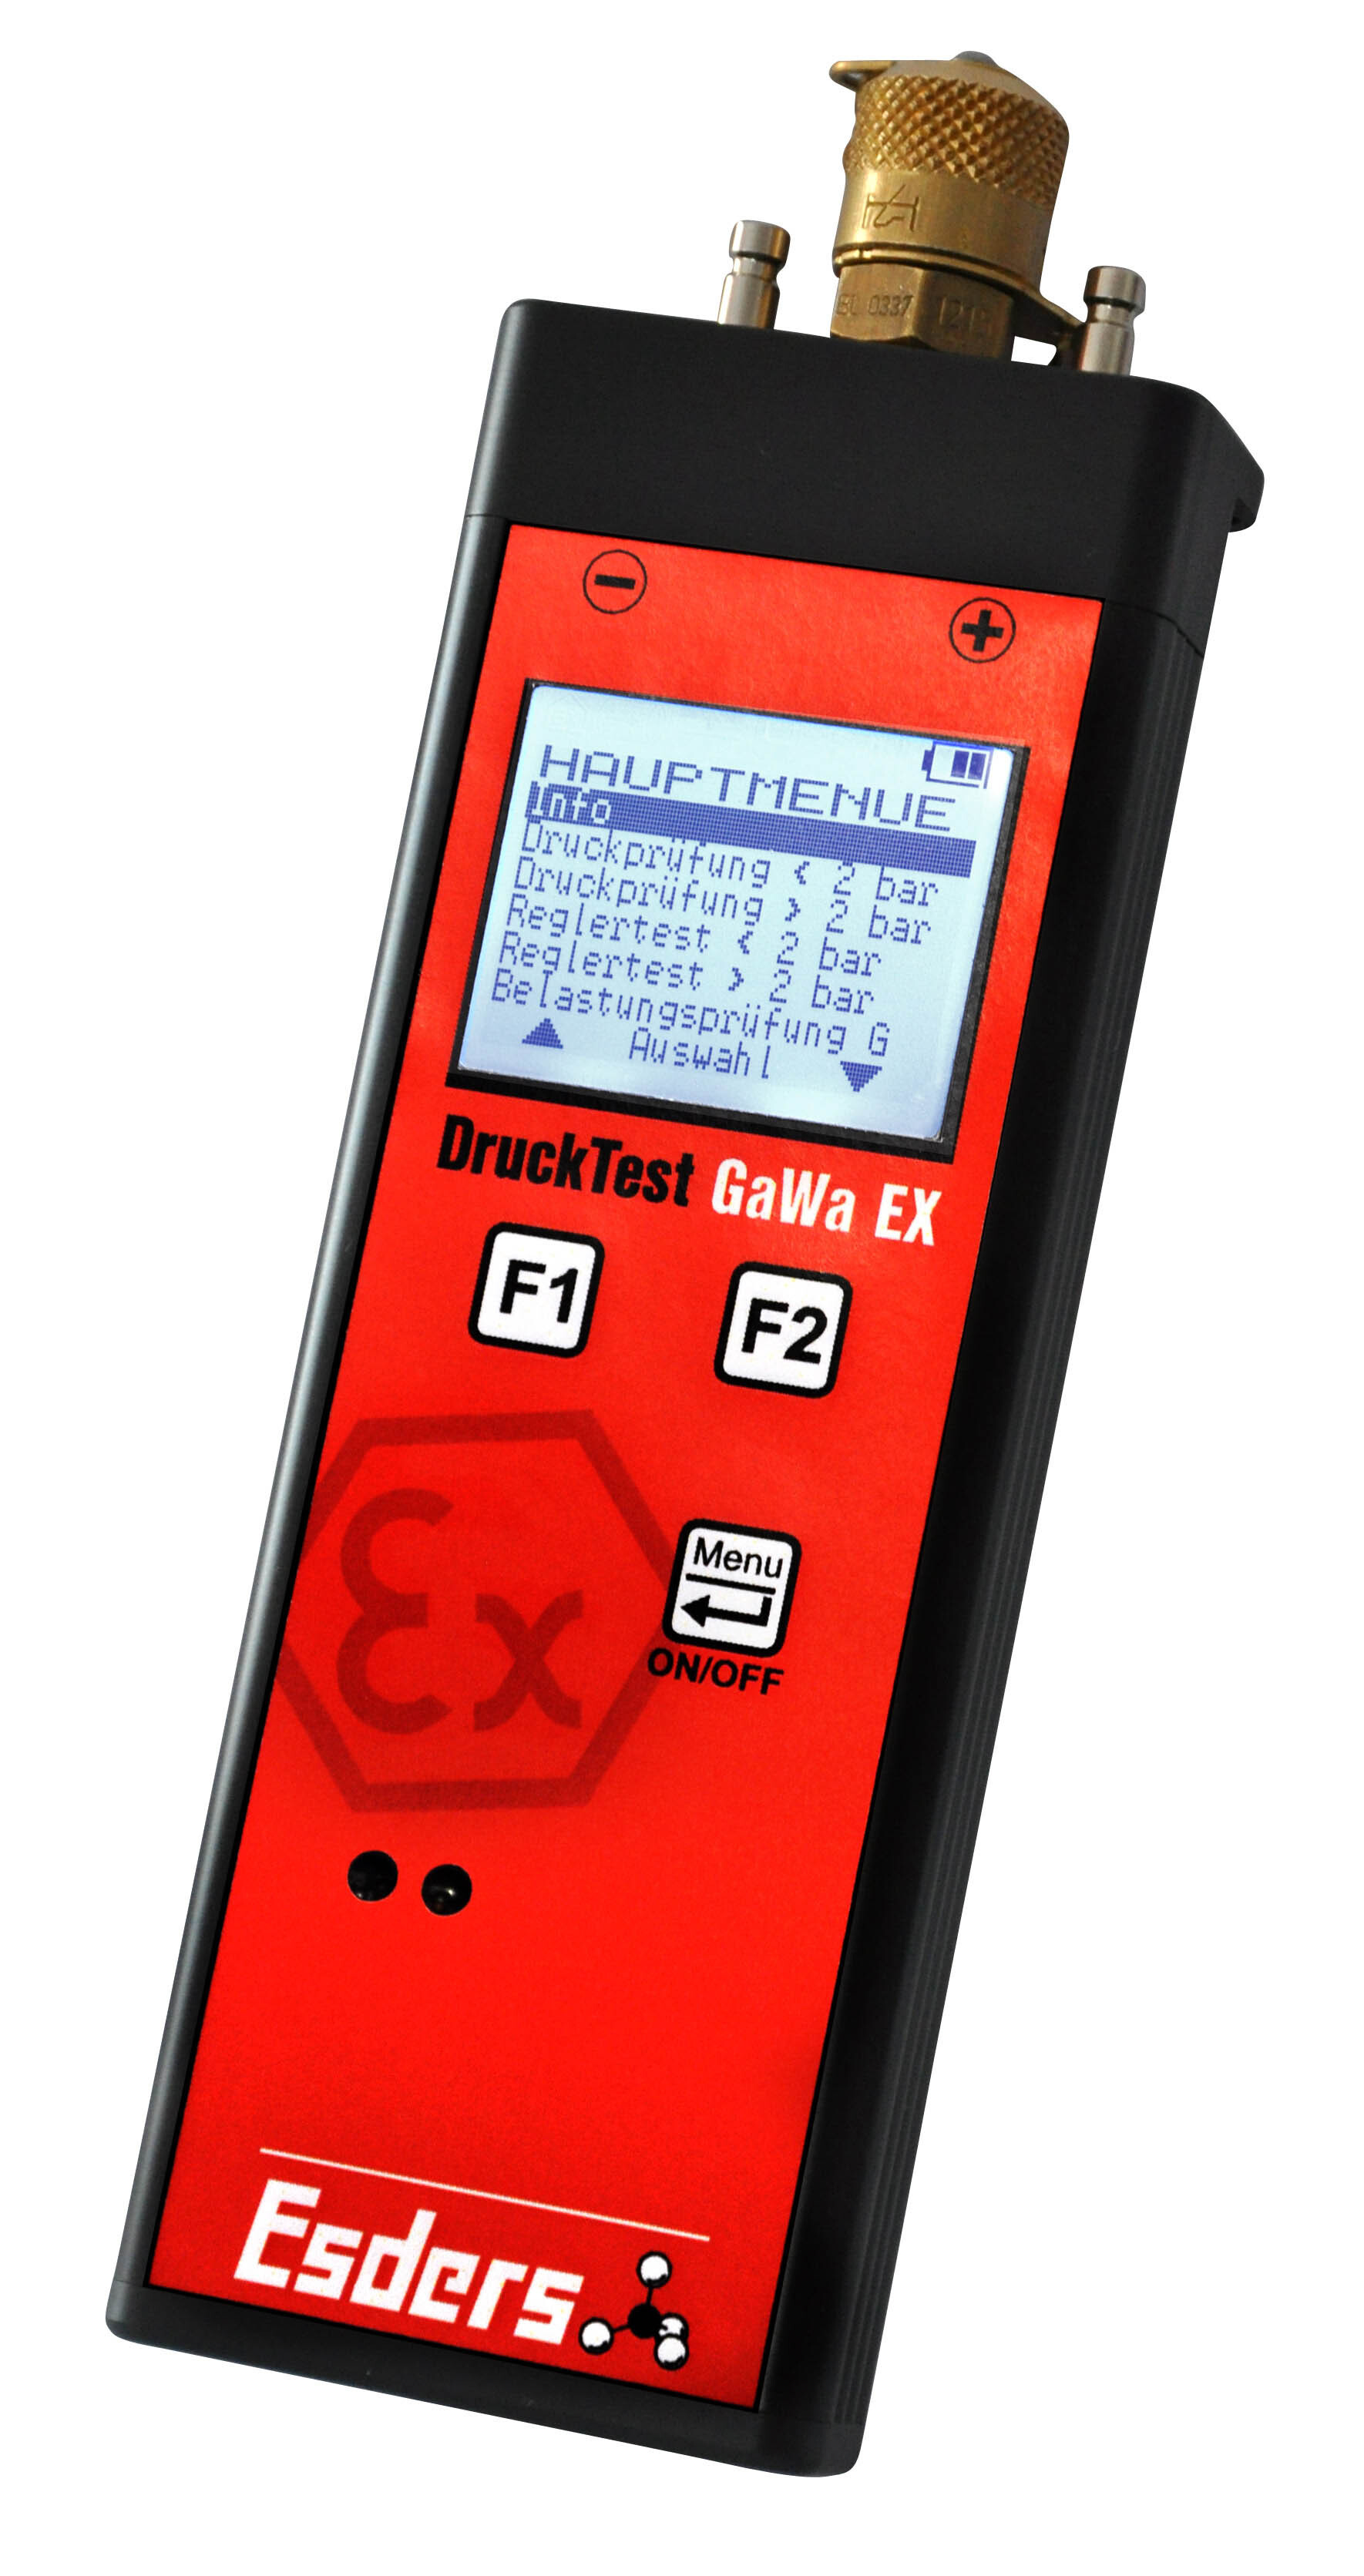 DruckTest GaWa EX HMG2 Batterie 2/50 bar
Messbereich 0-2 bar und 0-50 bar